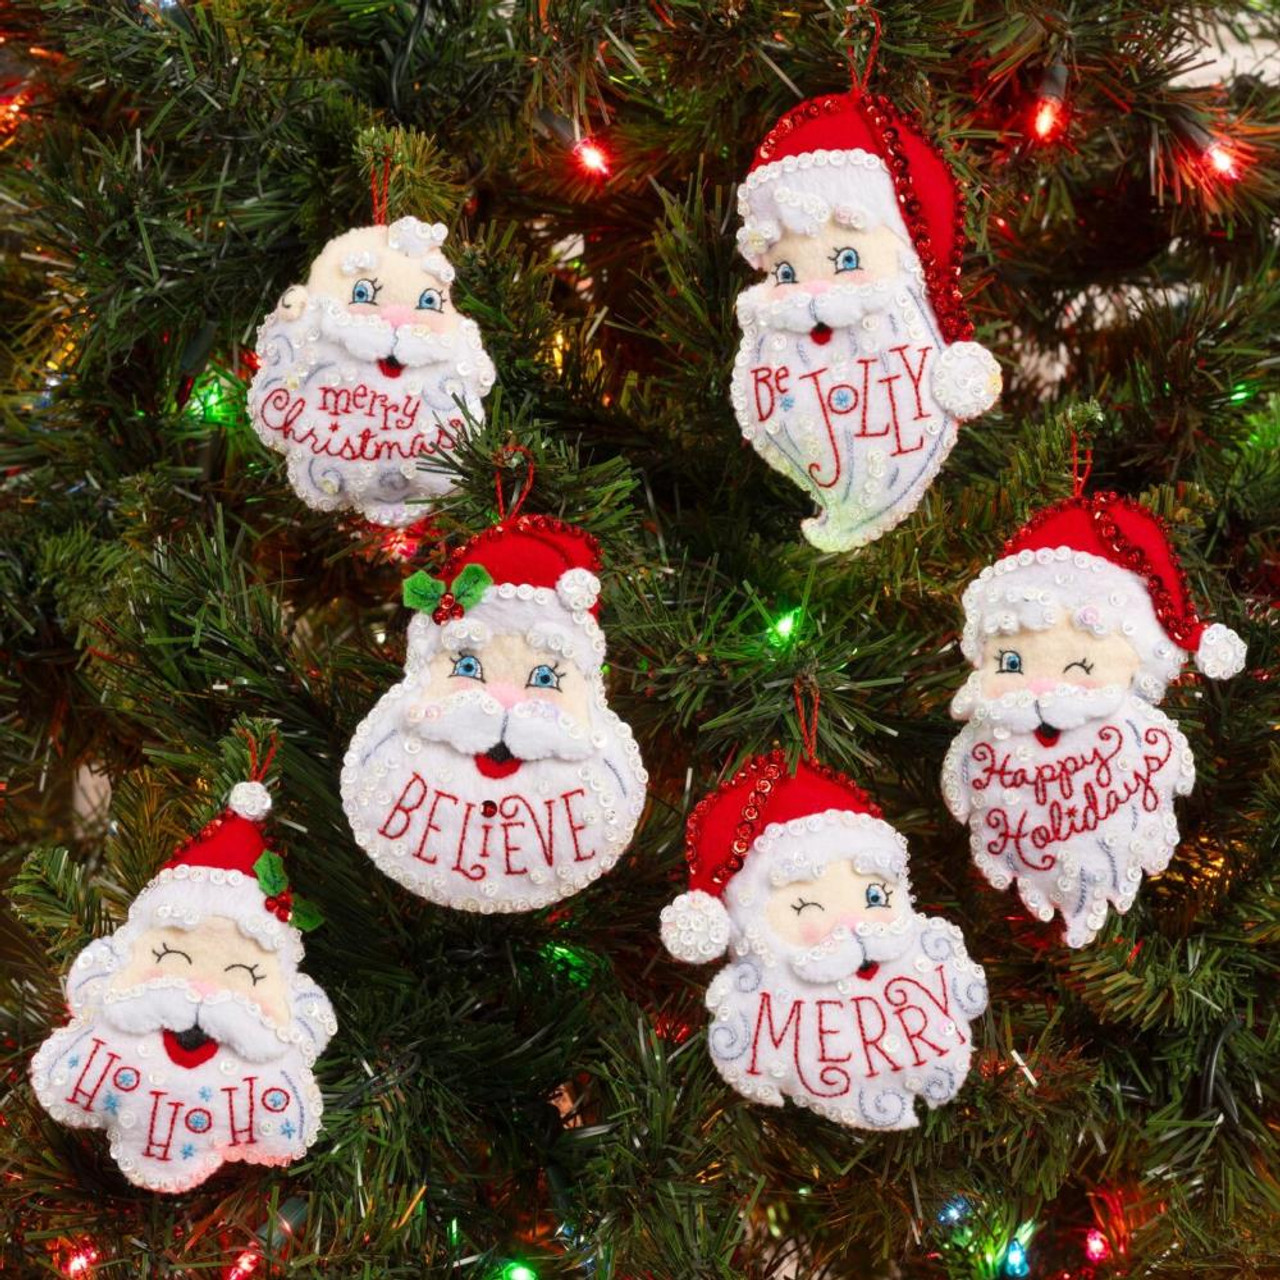 Bucilla Ornament Kit 48786 Mini Heirloom Christmas Figures Makes 6